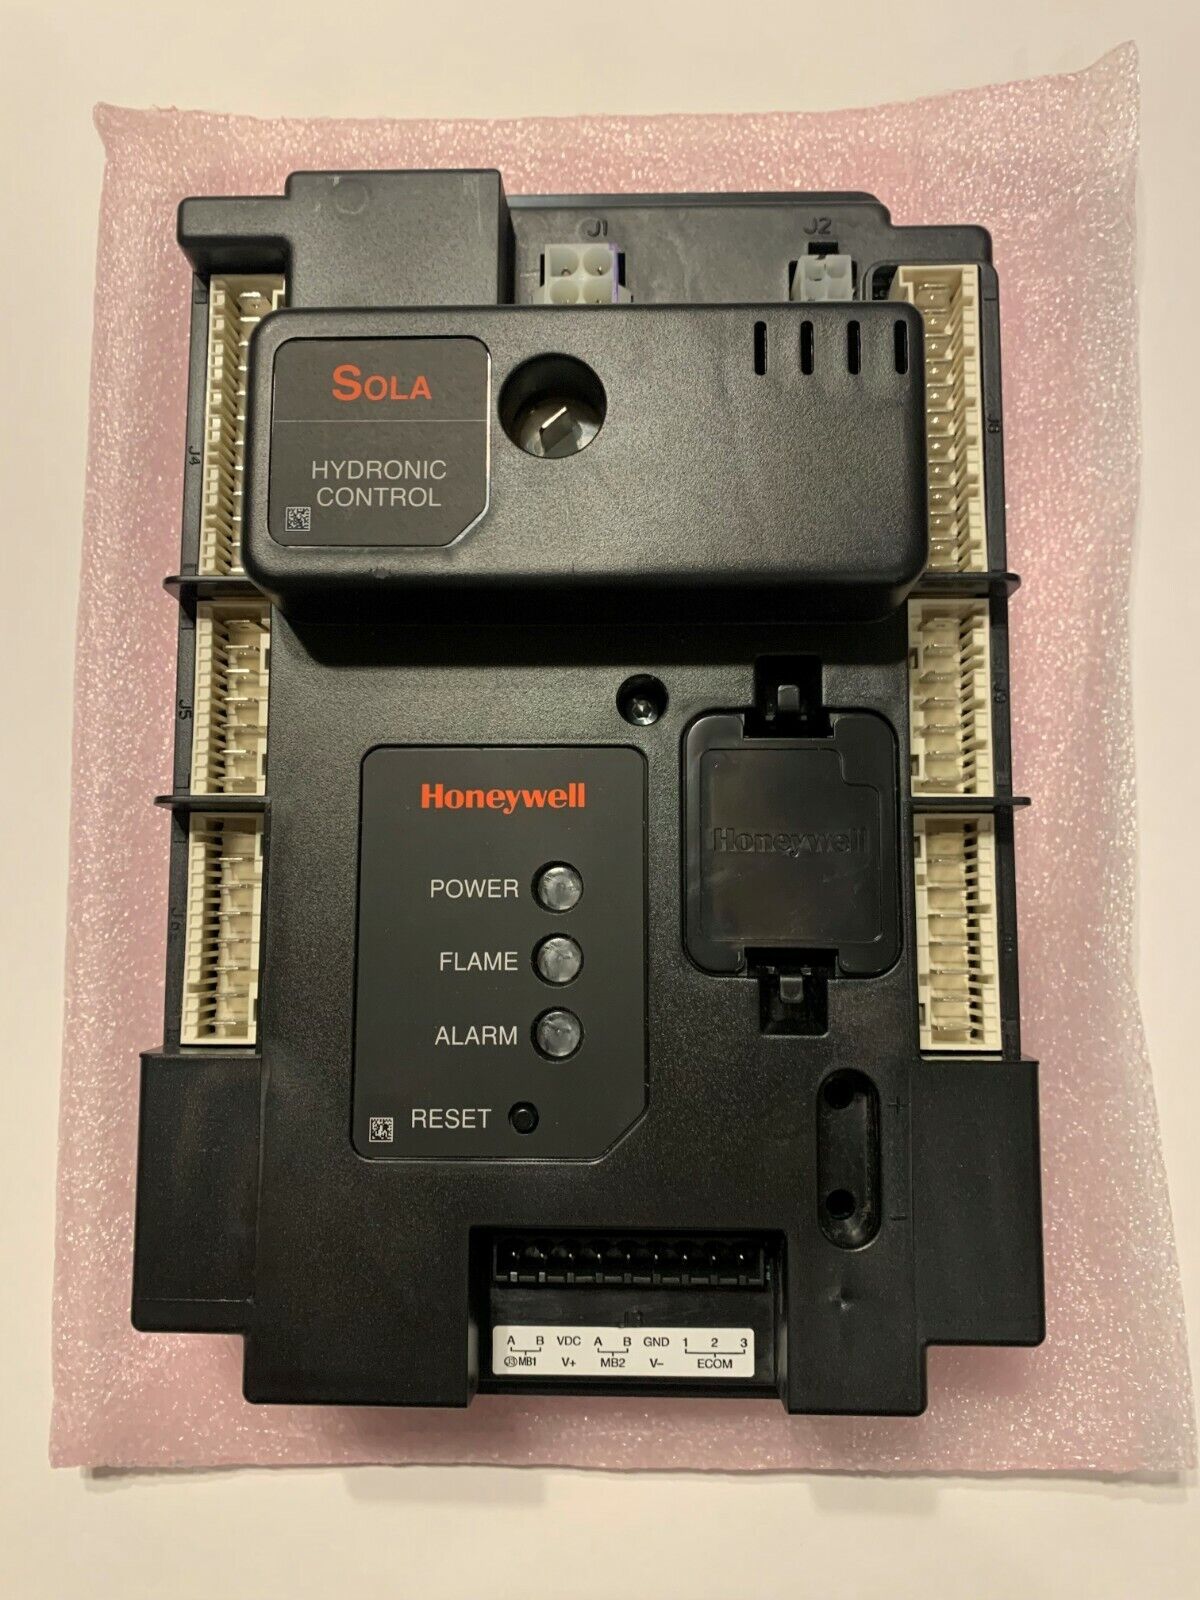 NEW Honeywell SOLA R7910B1009 Hydronic Control System 